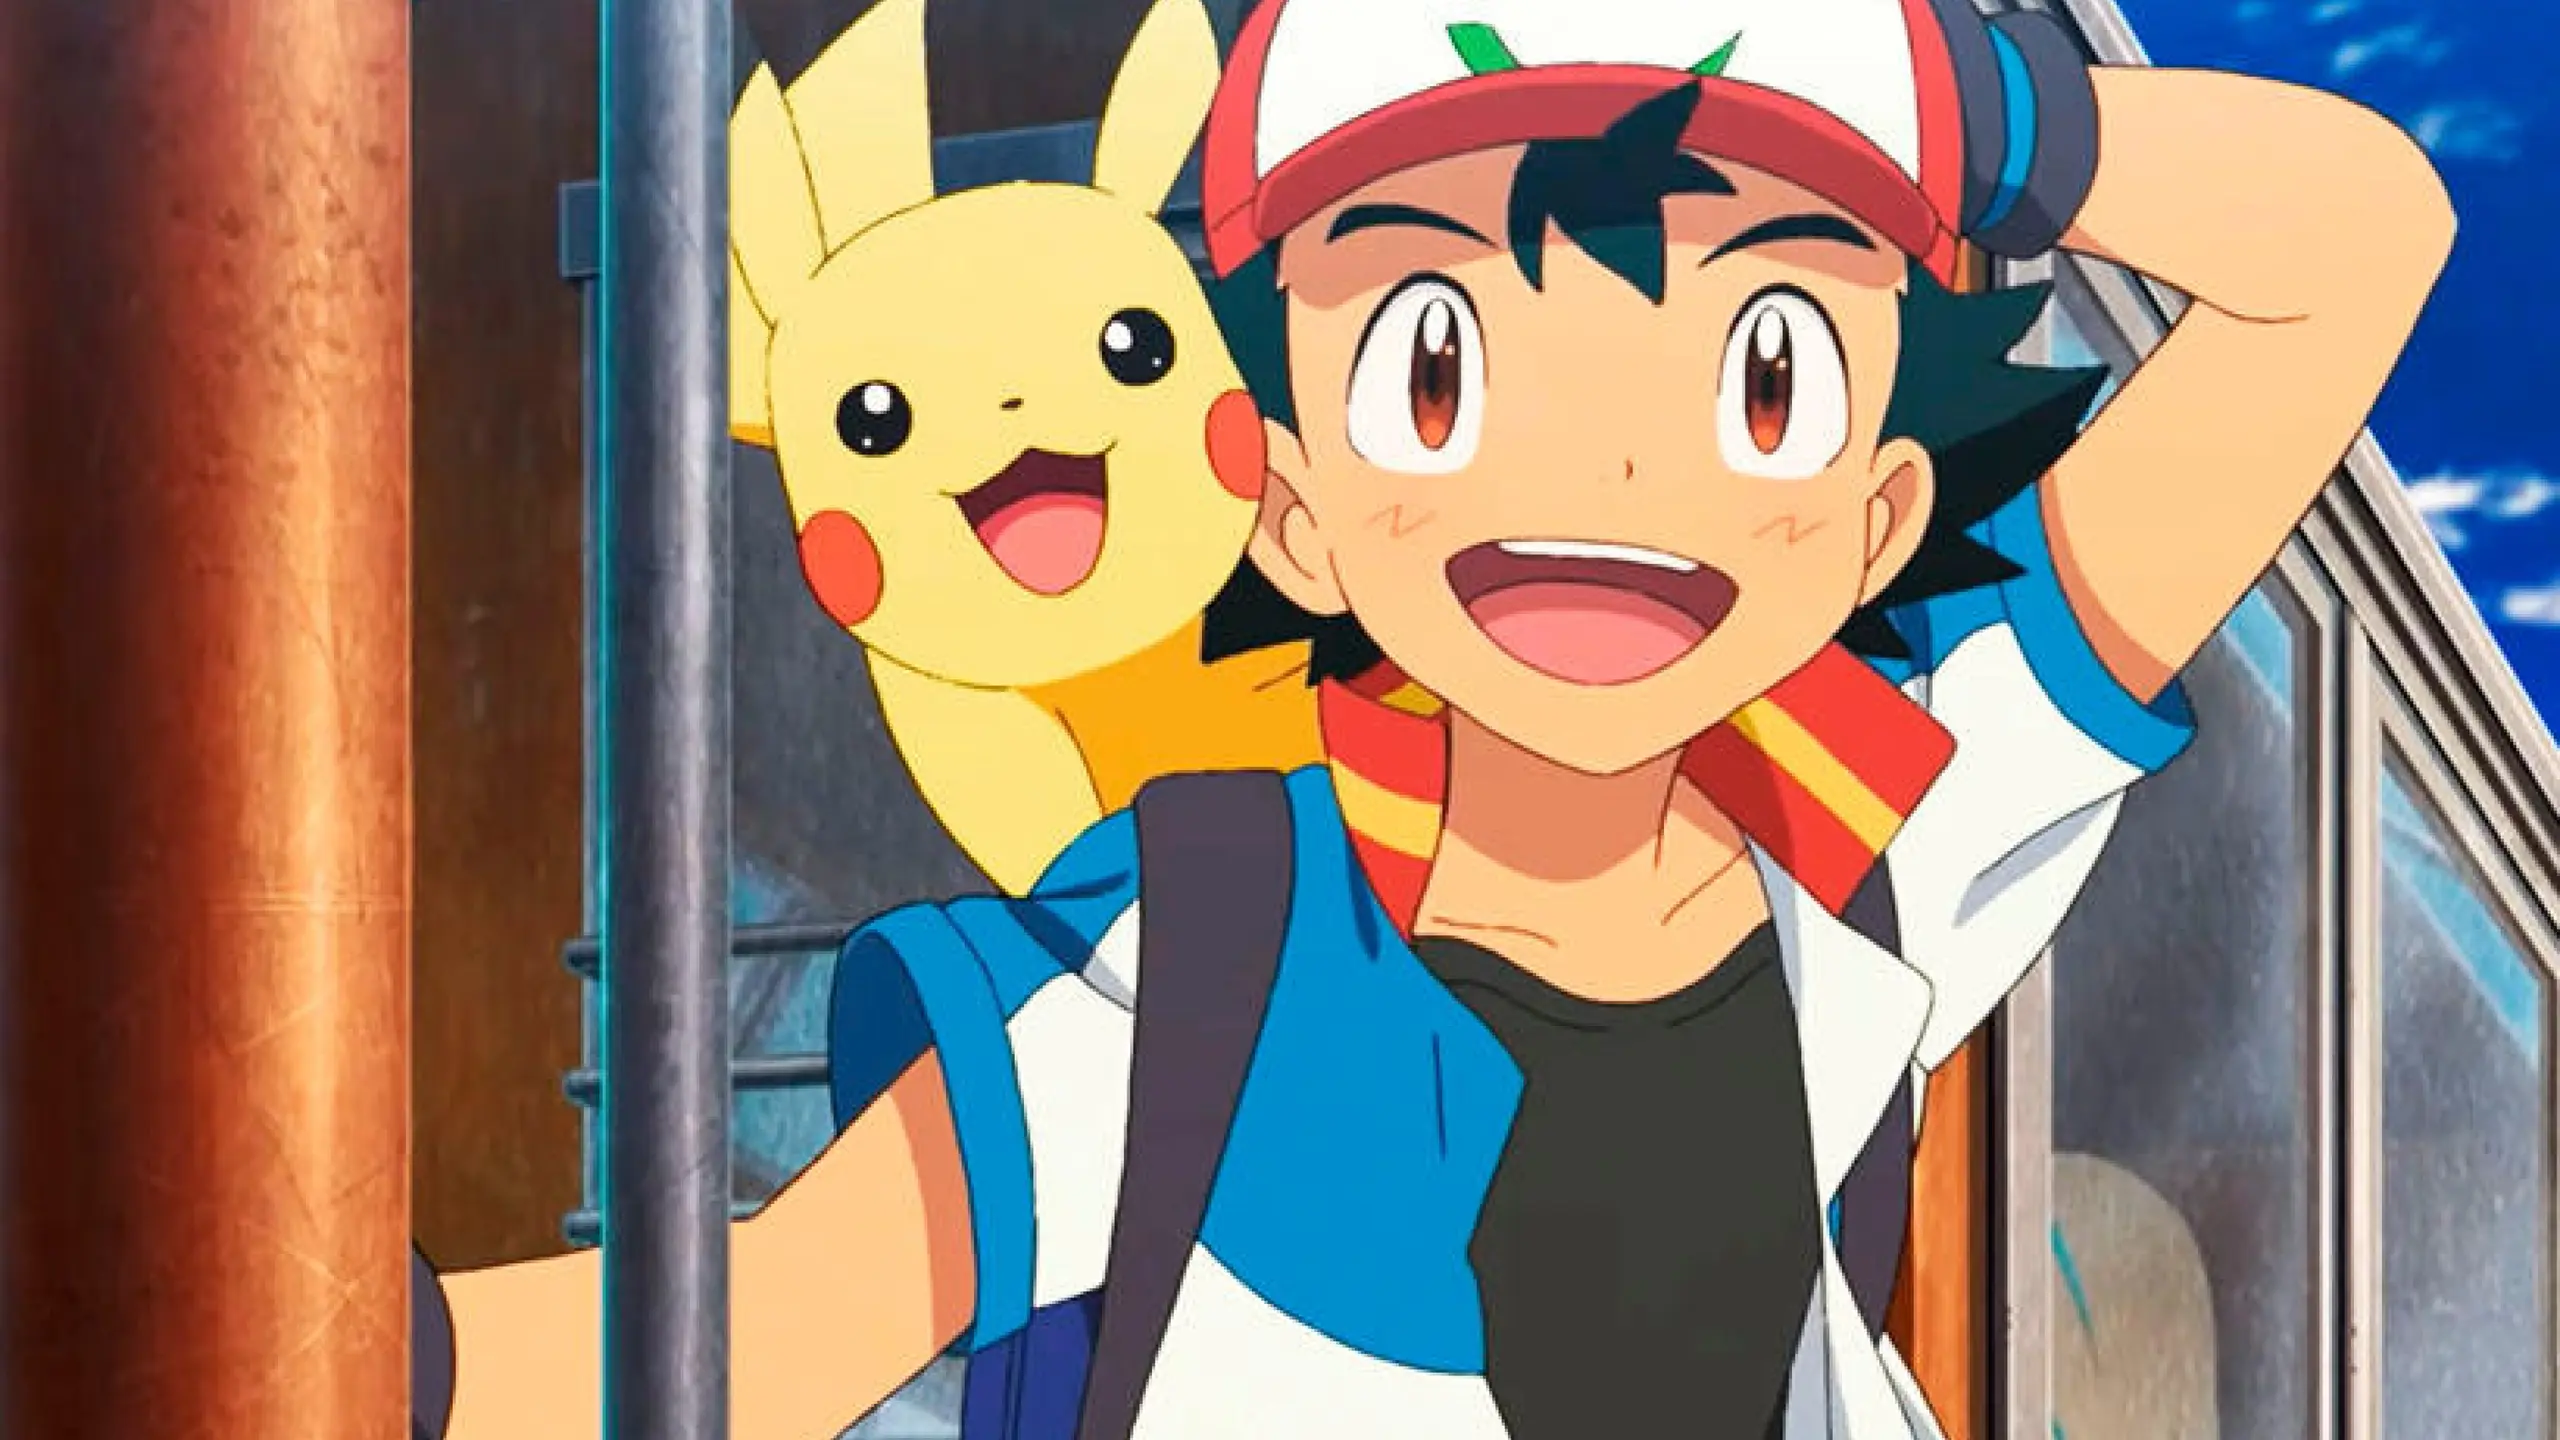 Gemeinsam haben Ash und Pikachu schon viele Abenteuer erlebt. Wir haben die Pokémon-Filme im ultimativen Ranking!